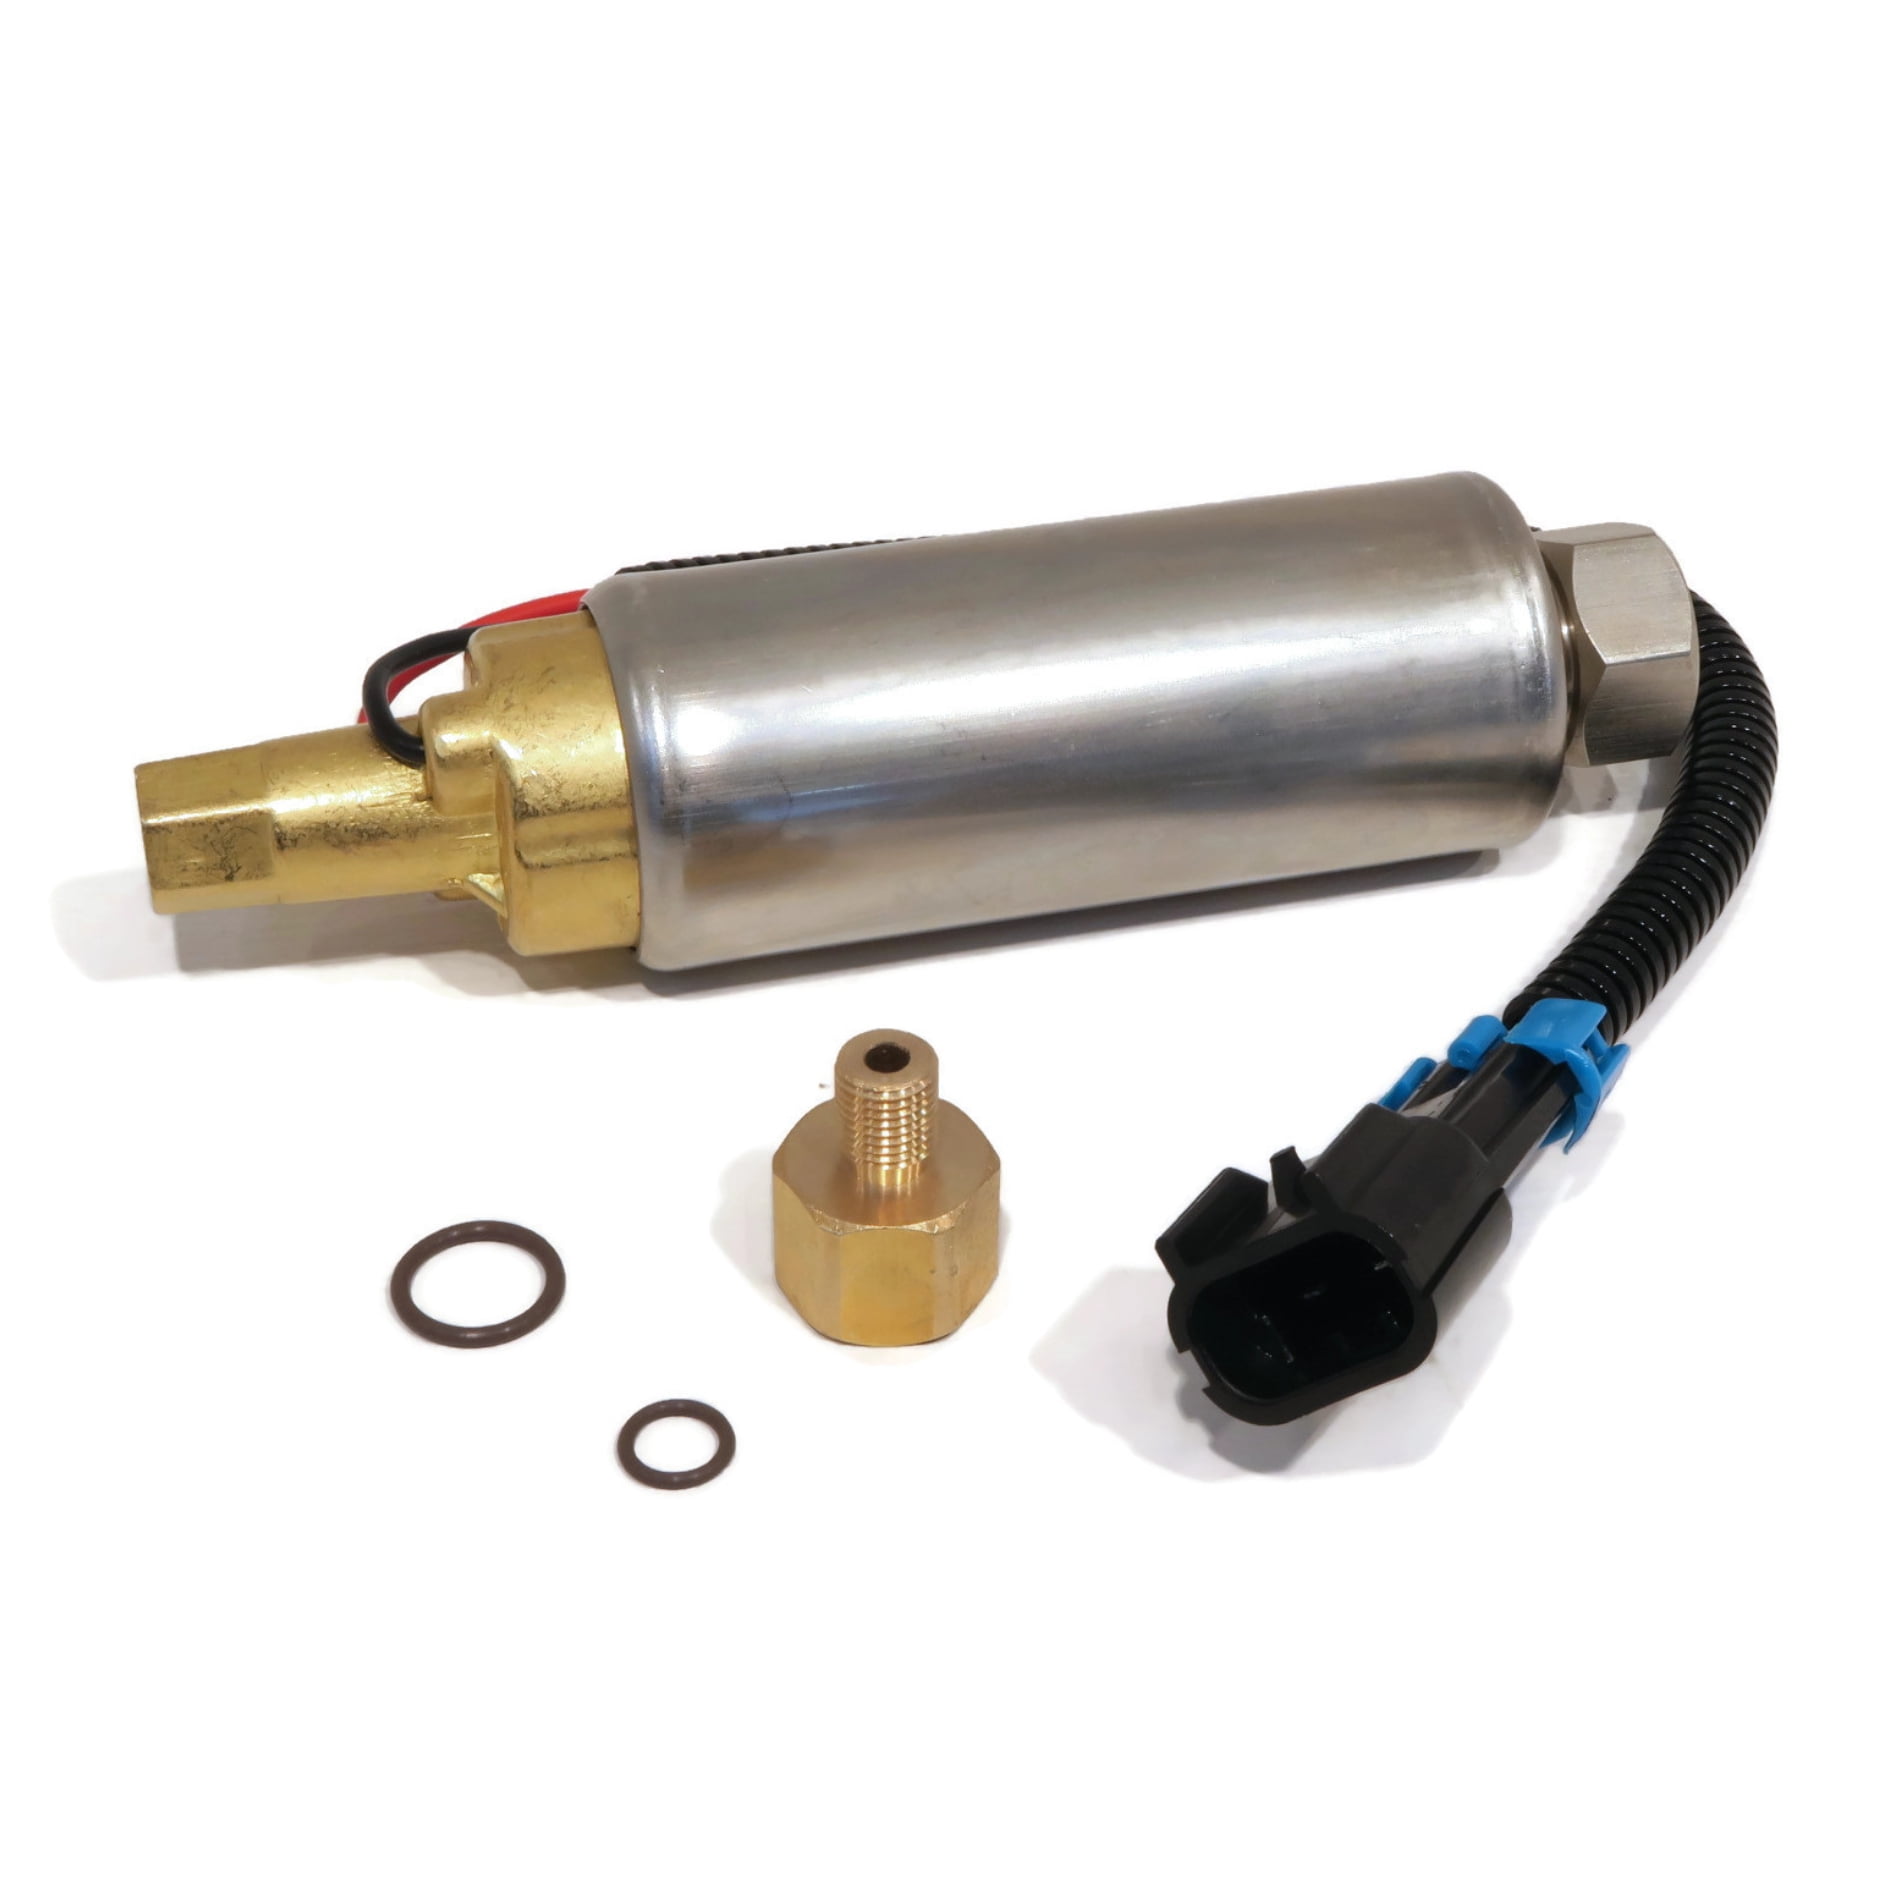 Fuel pump kit for John Deere L120 L118 LA120 LA130 LA140 LA150 extrak 